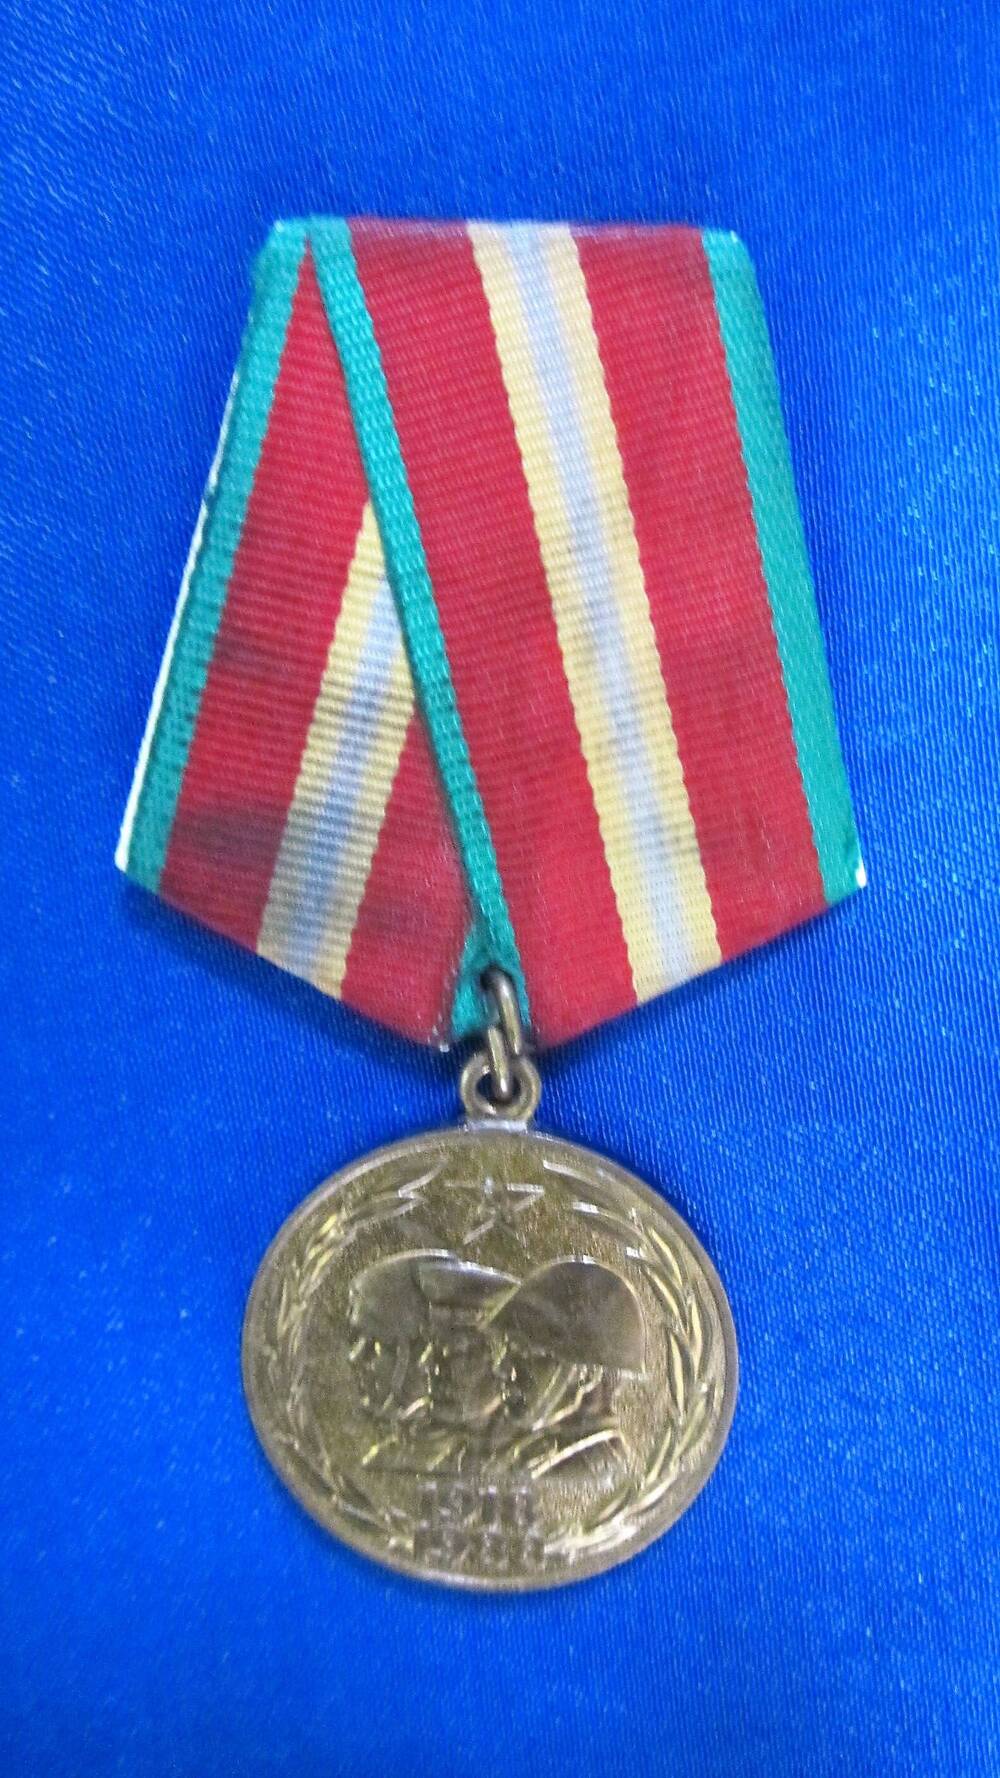 Медаль юбилейная «70 лет Вооружённых сил СССР». Принадлежала Савенко Галине Ивановне, участнице Великой Отечественной войны.